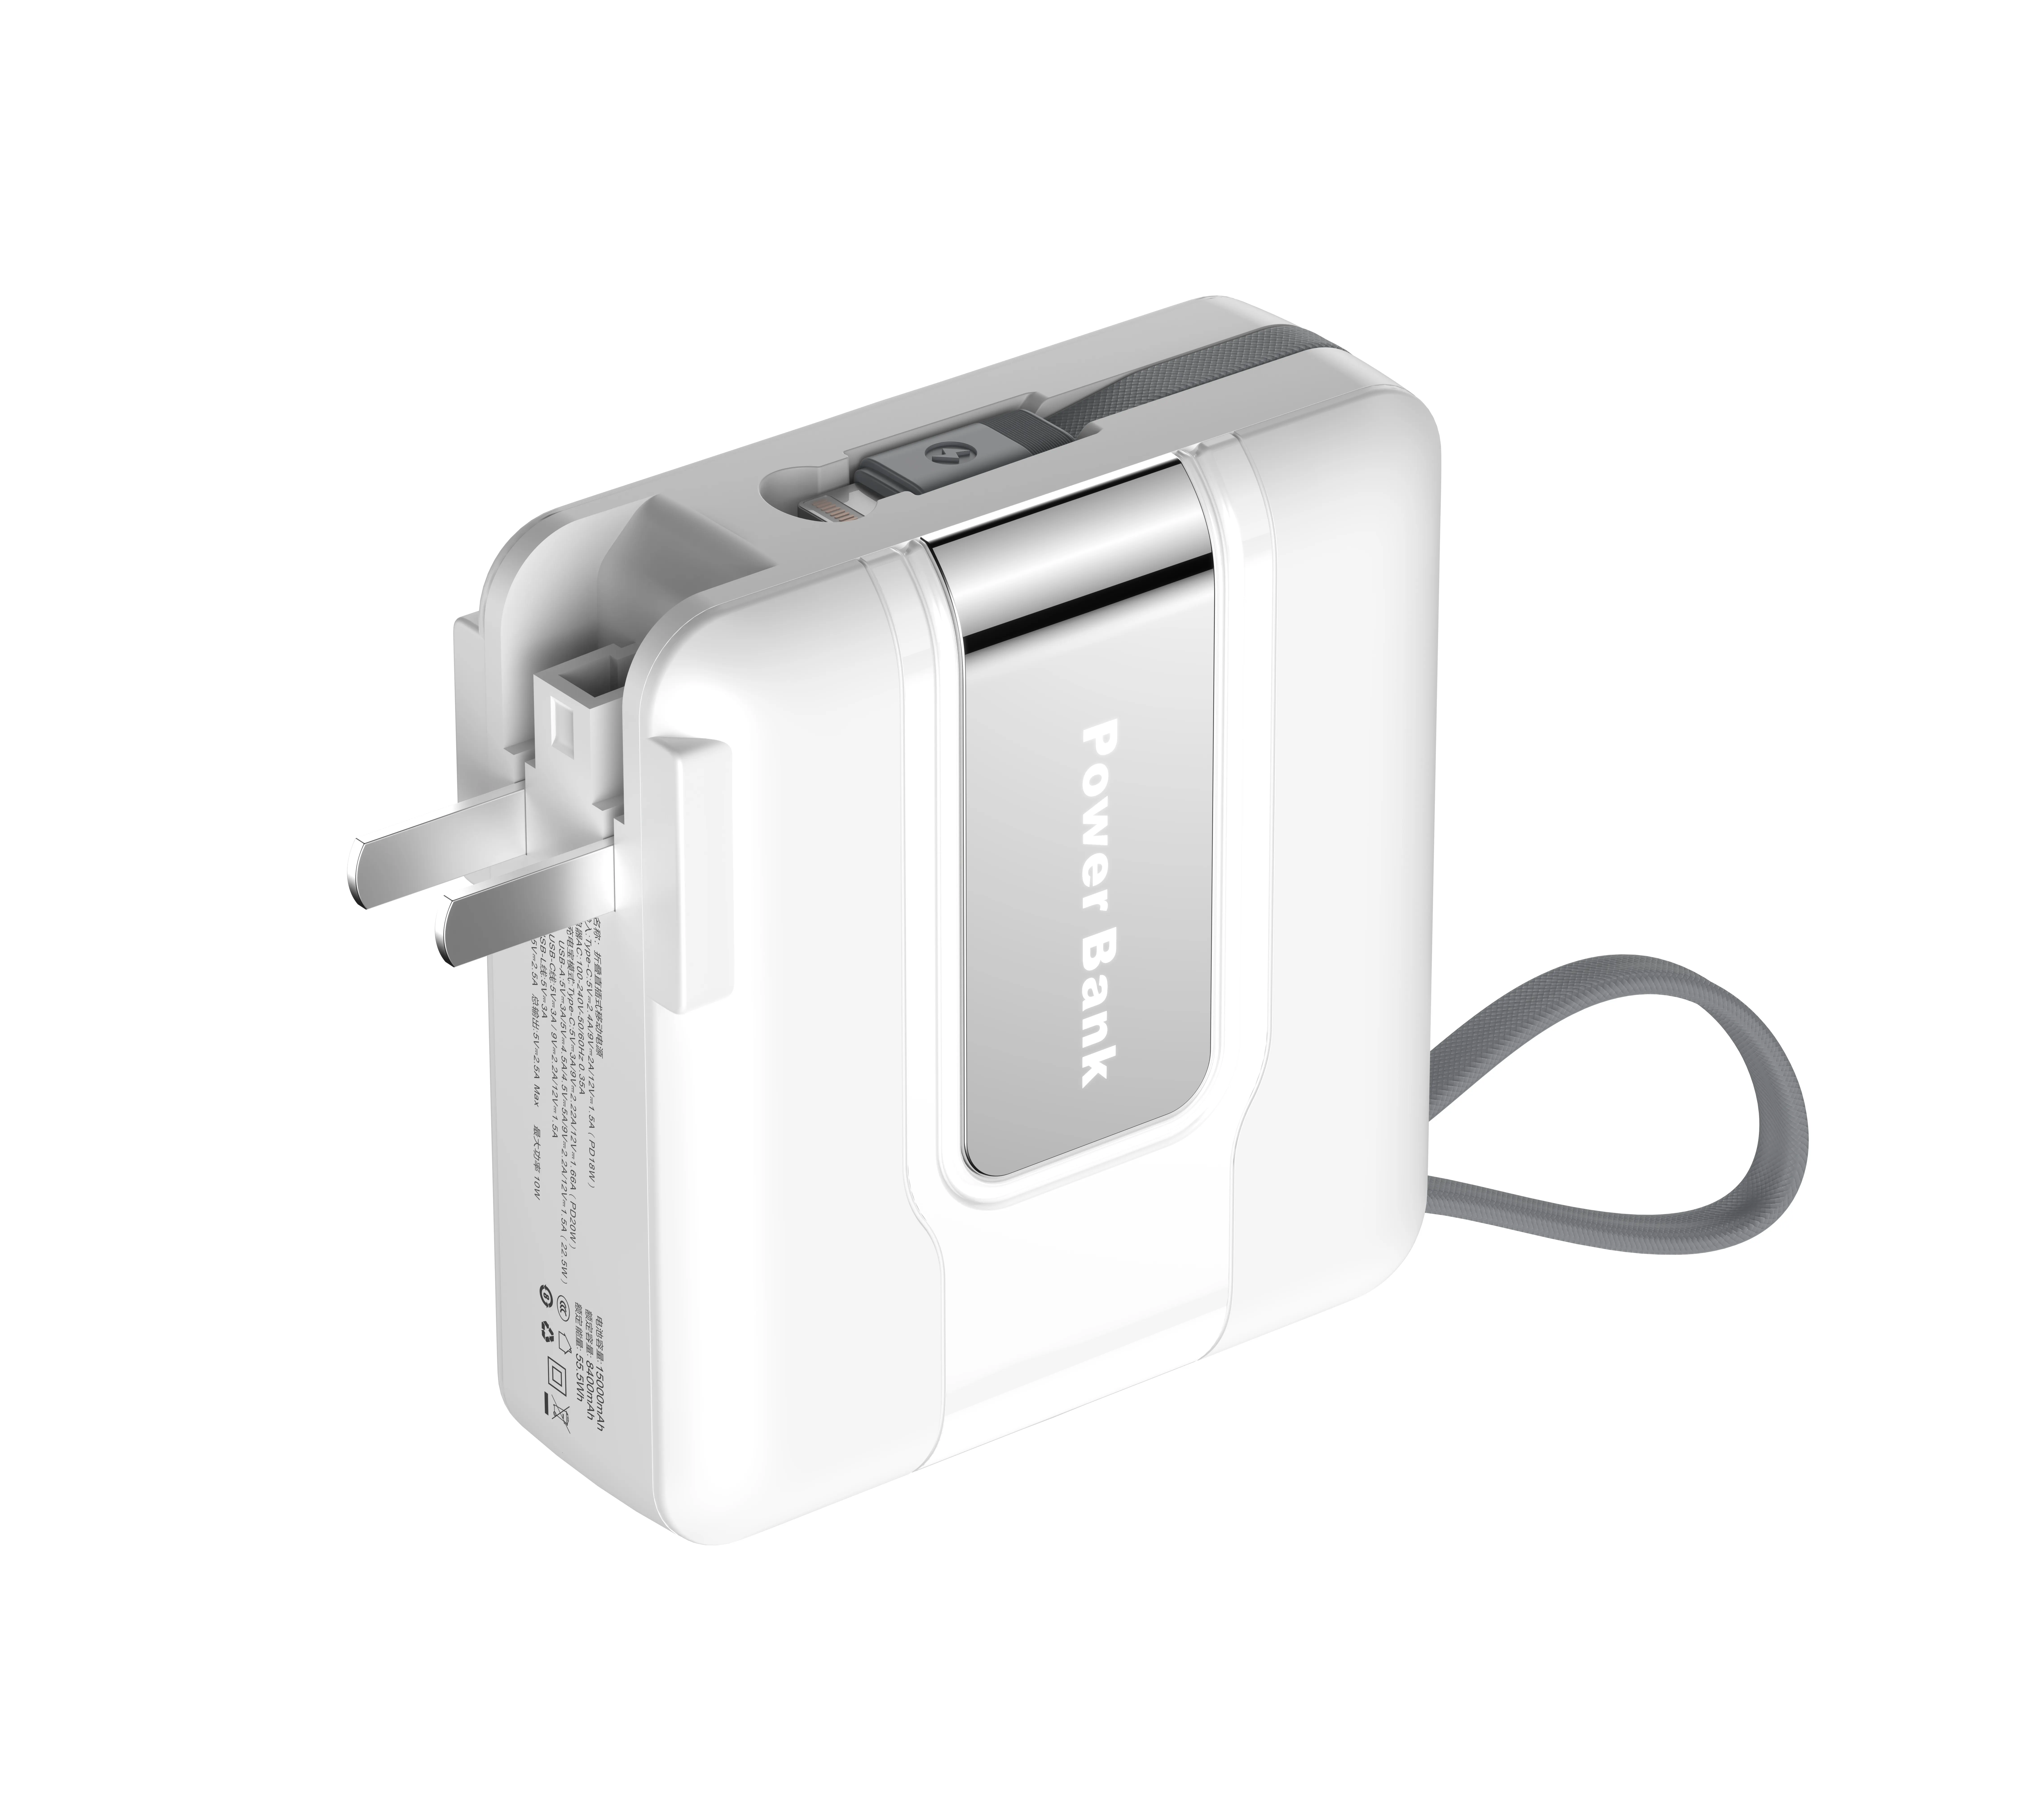 Carga súper rápida 22,5 W PD USB C Power Bank Easy Carry Travel con cable incorporado 15000mAh Cargador inalámbrico Entrada de teléfono 20W